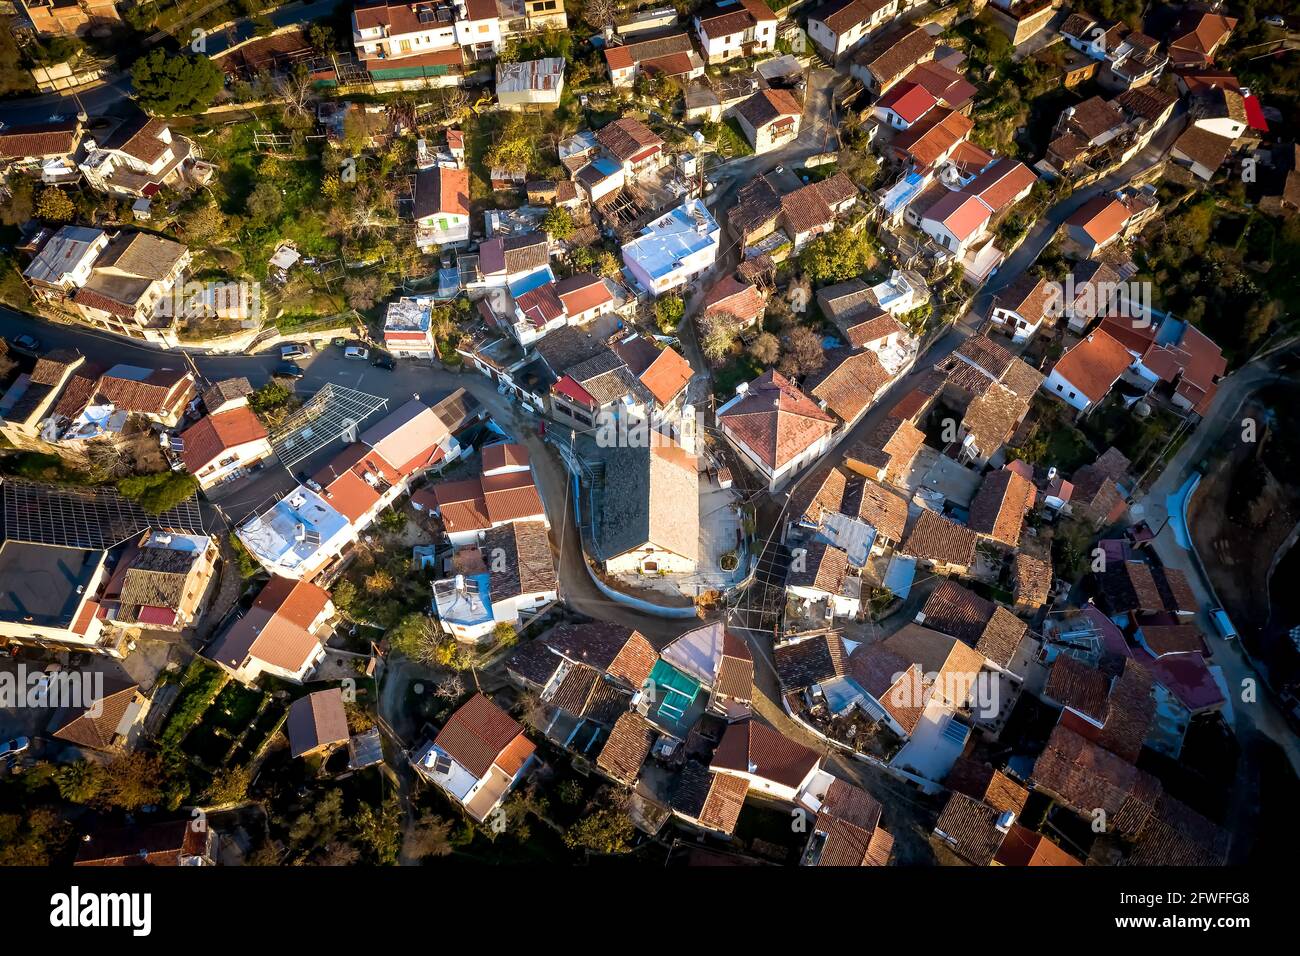 Aerial view of Gourri mountain village in Cyprus Stock Photo